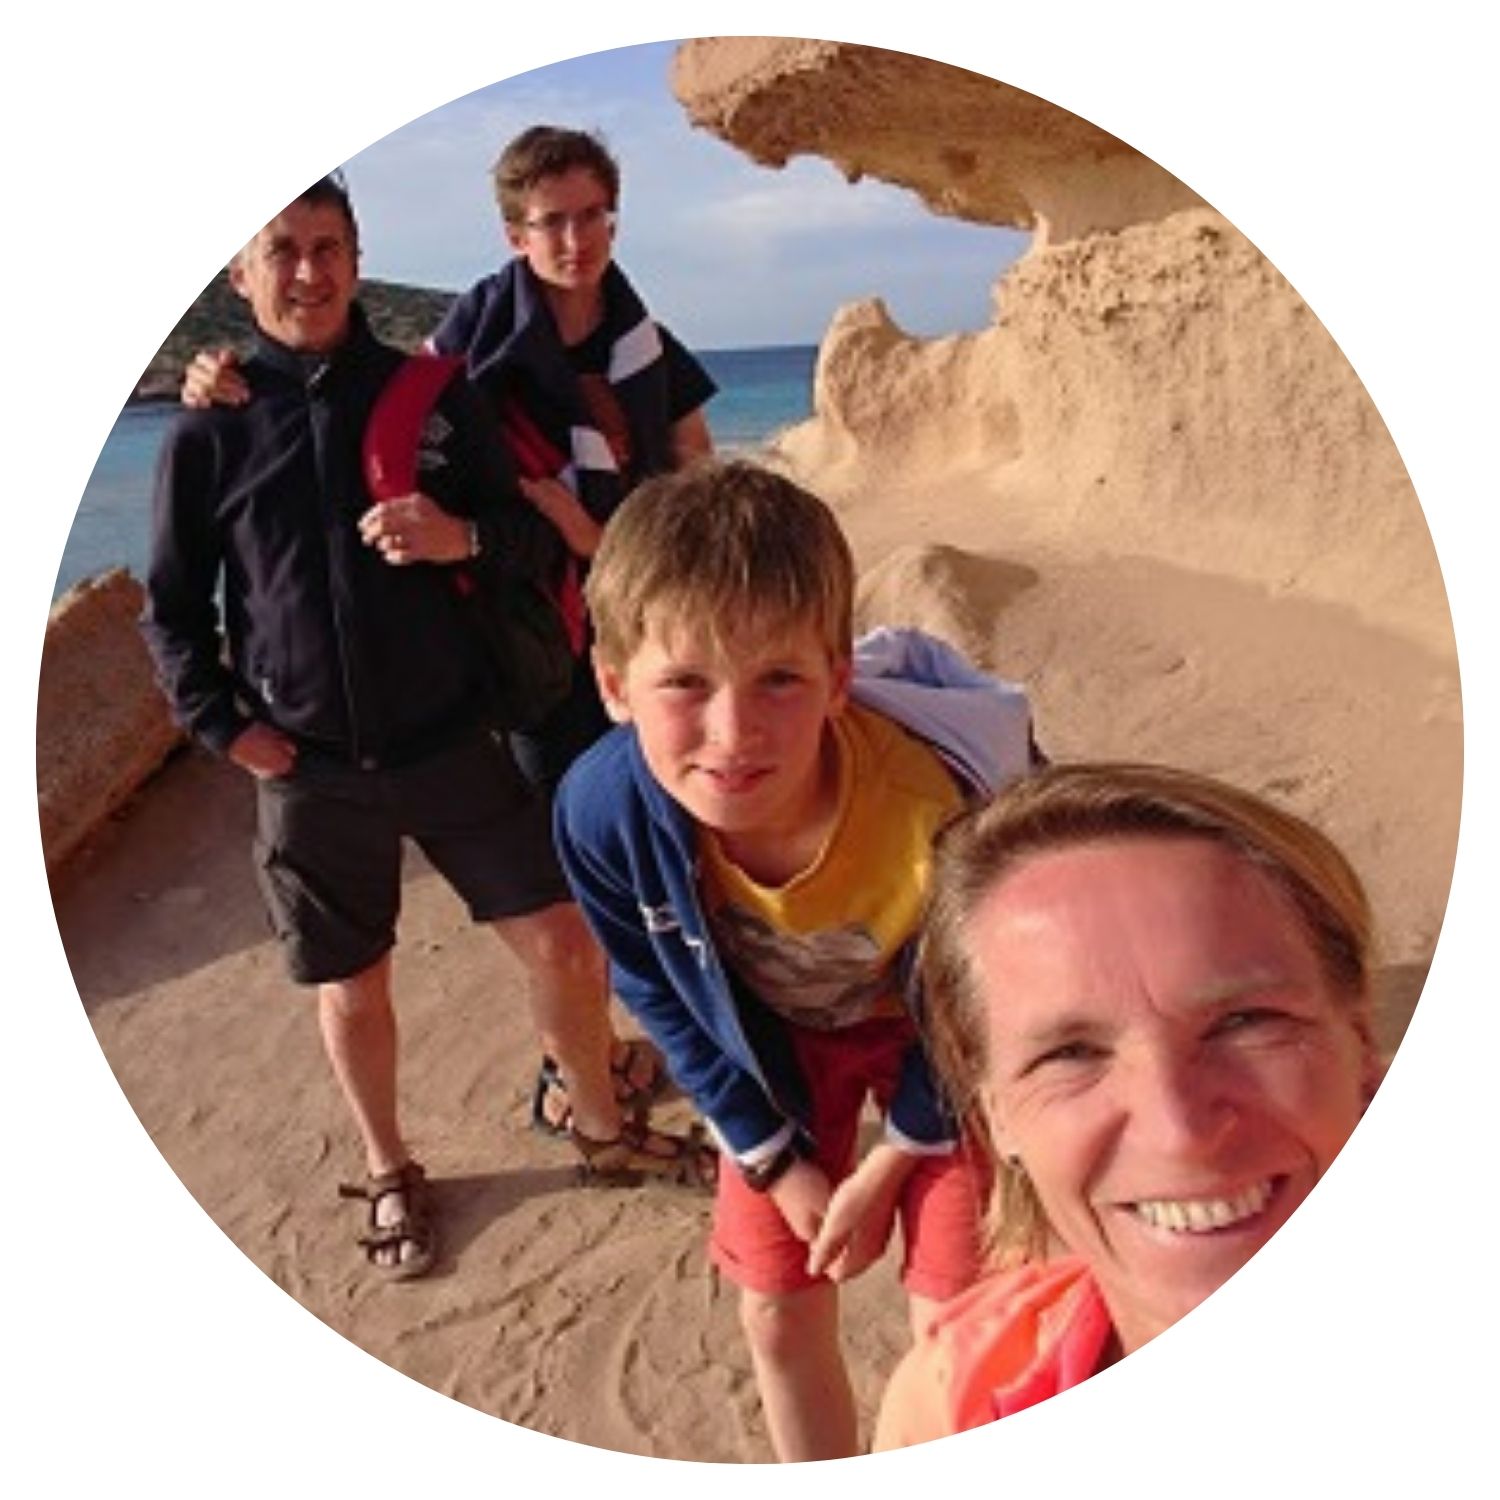 Une petite famille, composée de deux fils et de leurs parents, prend un selfie devant un monument historique à Ibiza, capturant des souvenirs précieux de leur voyage en famille.